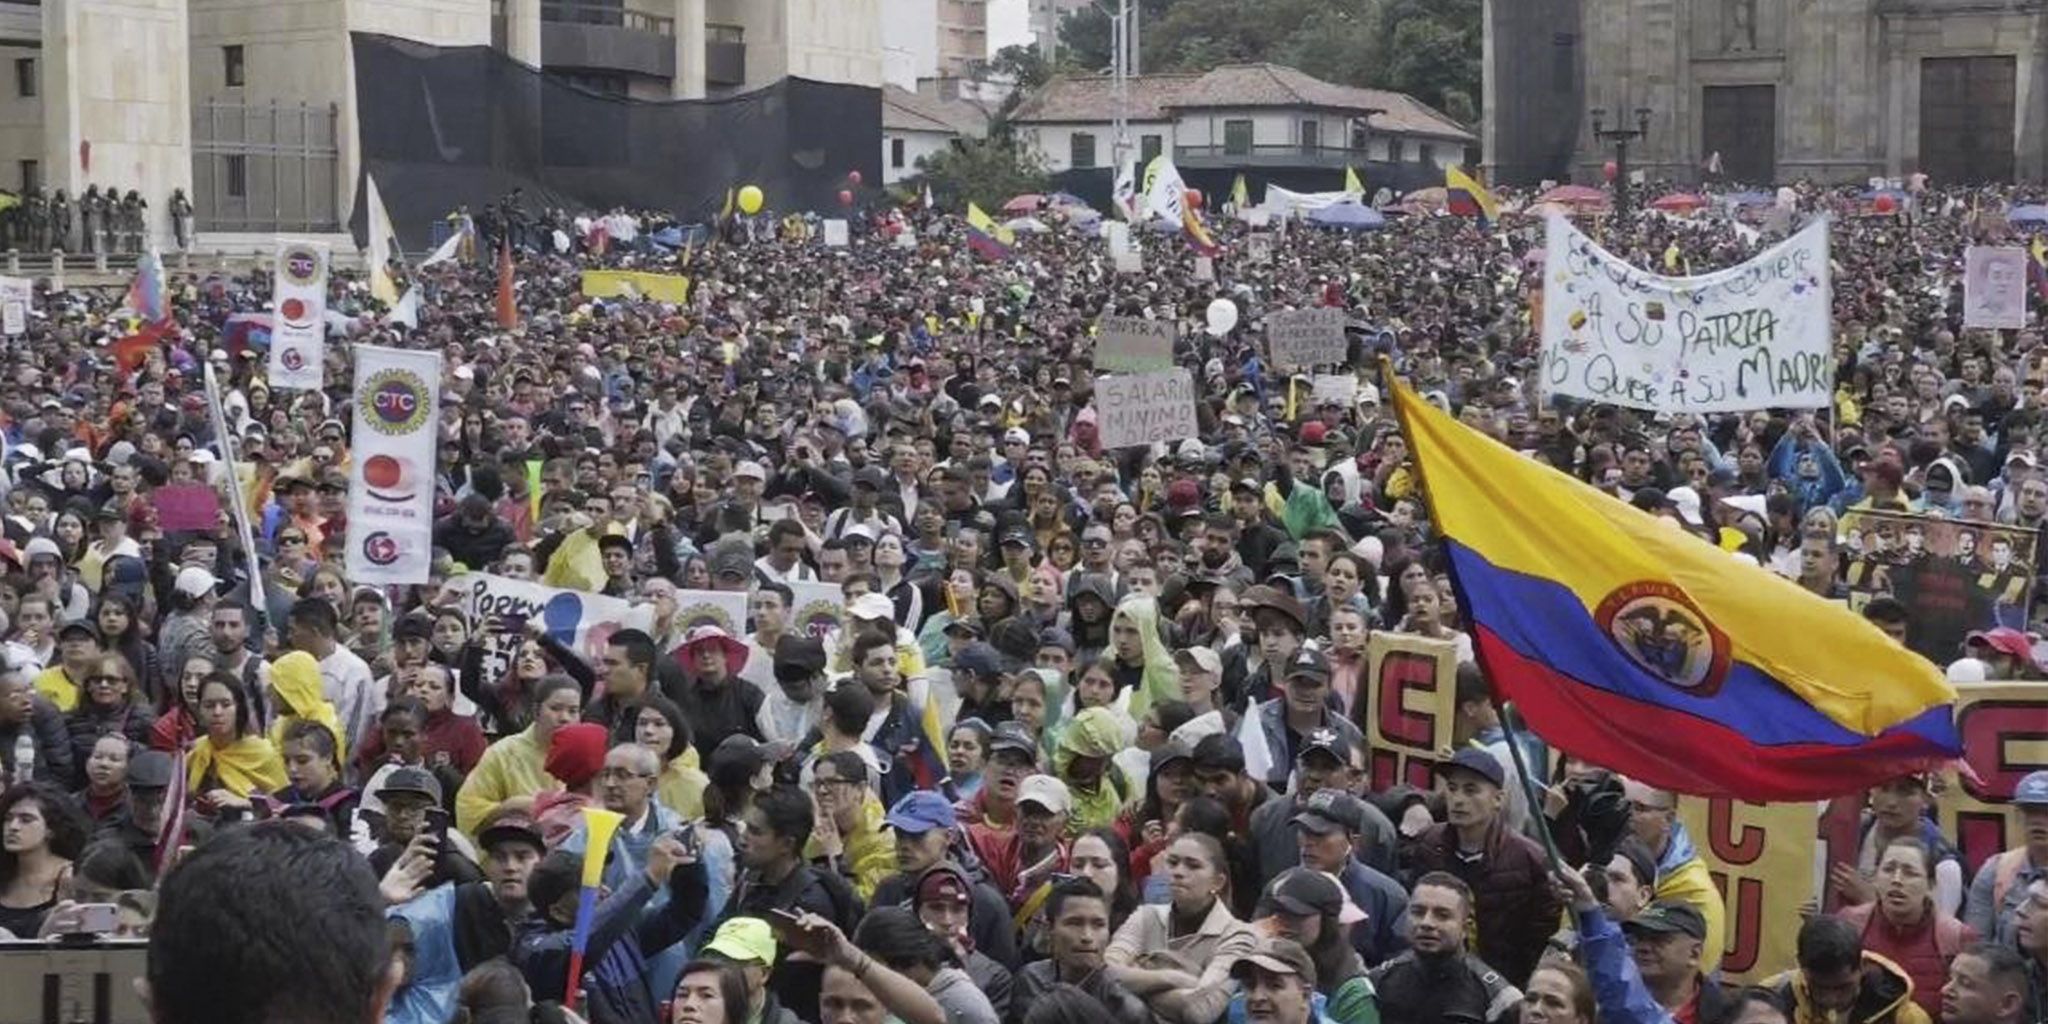 Во время протестов в Колумбии 89 человек пропали без вести, есть несовершеннолетние